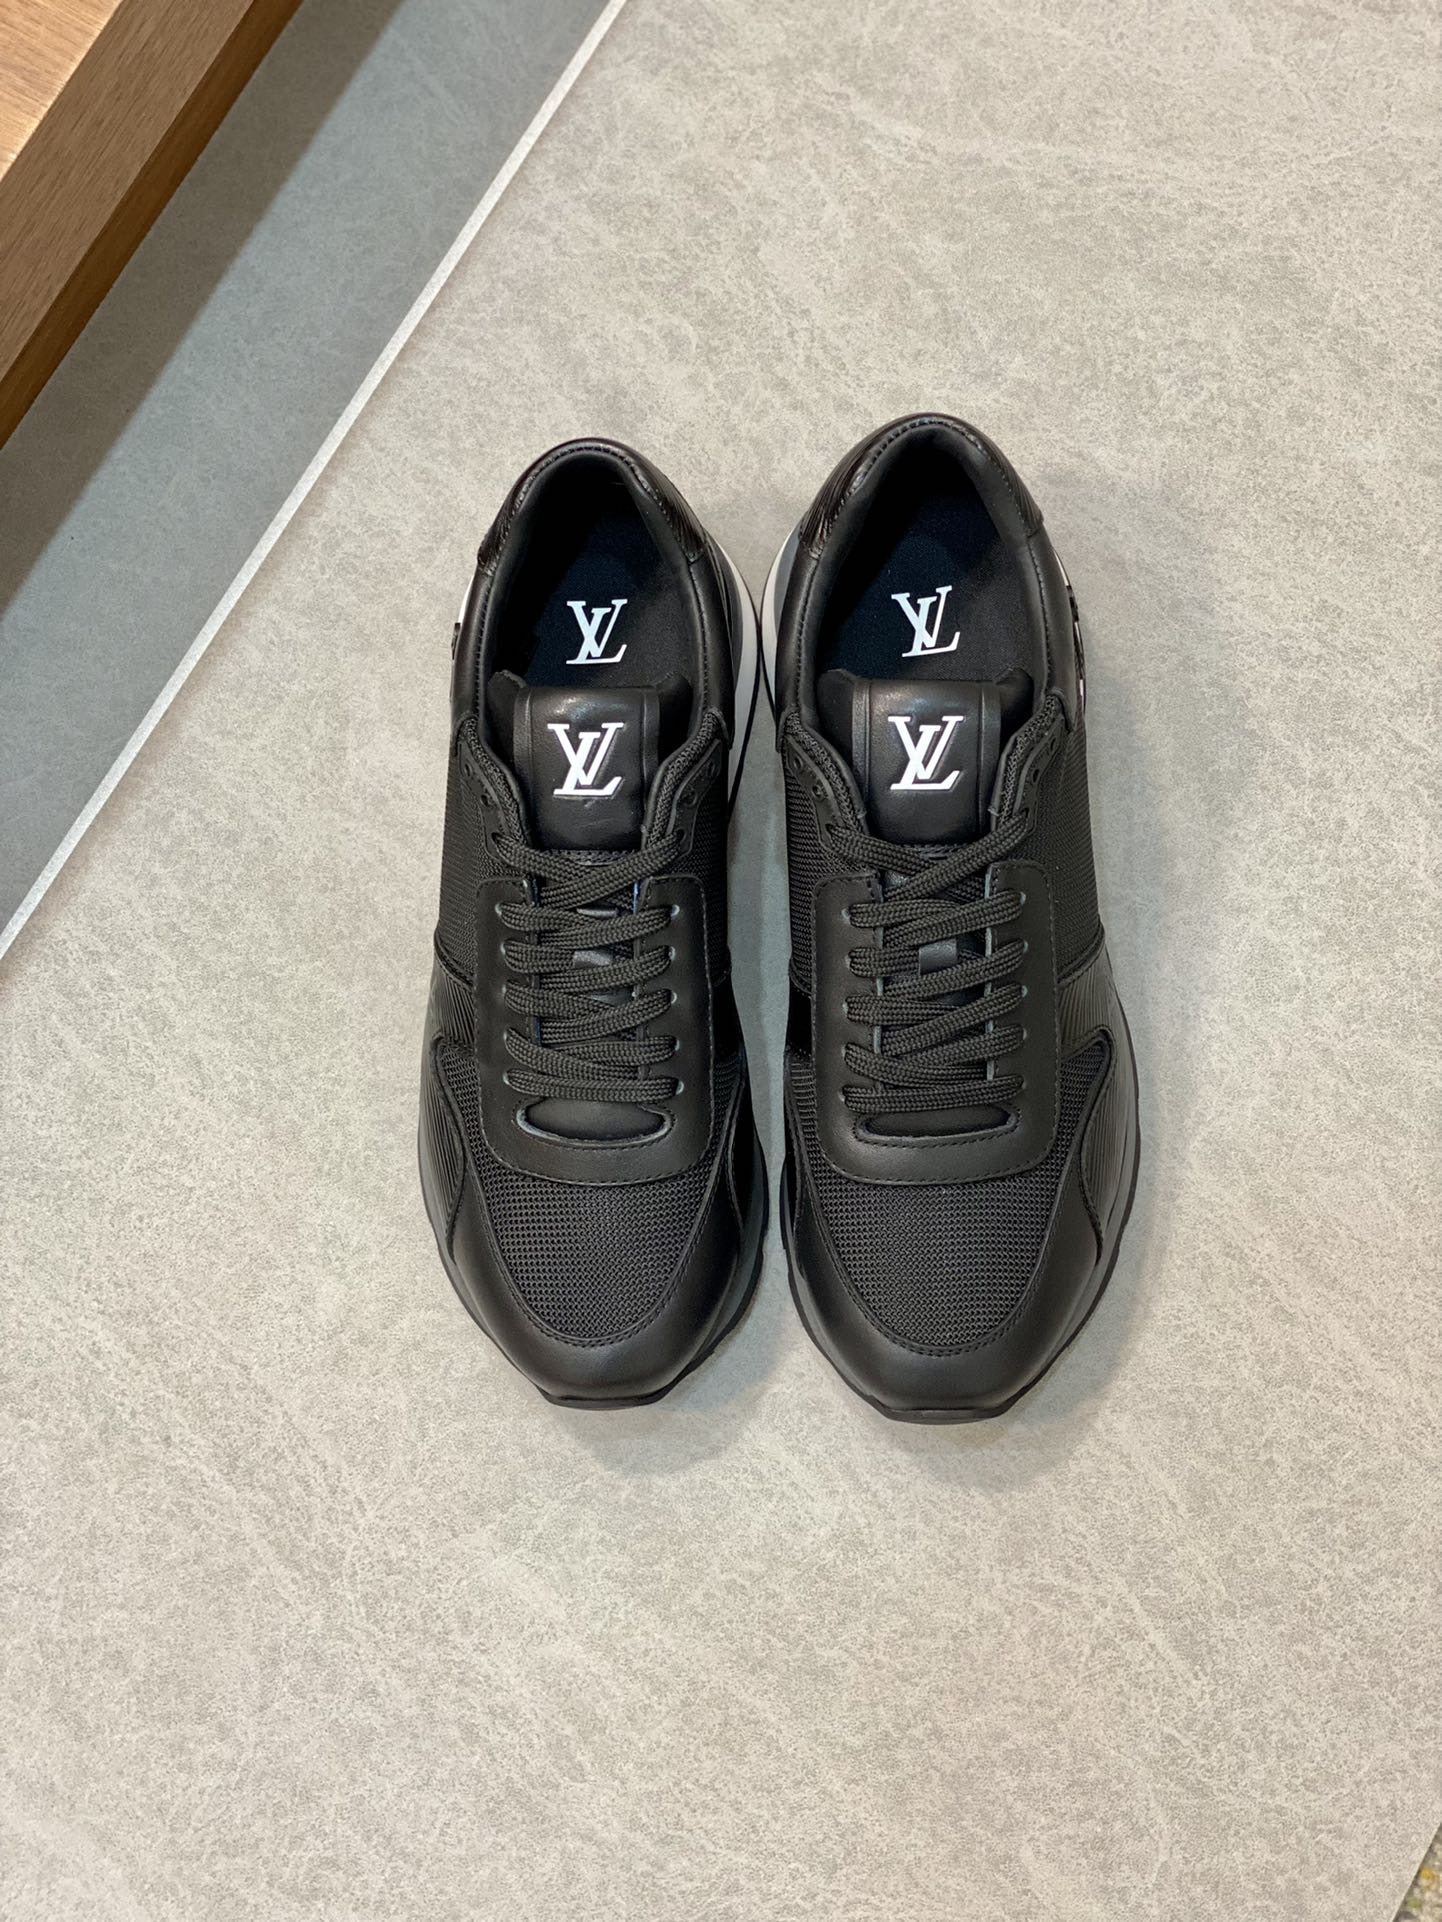 Louis Vuitton Shoes Sneakers Splicing Calfskin Cowhide TPU Low Tops